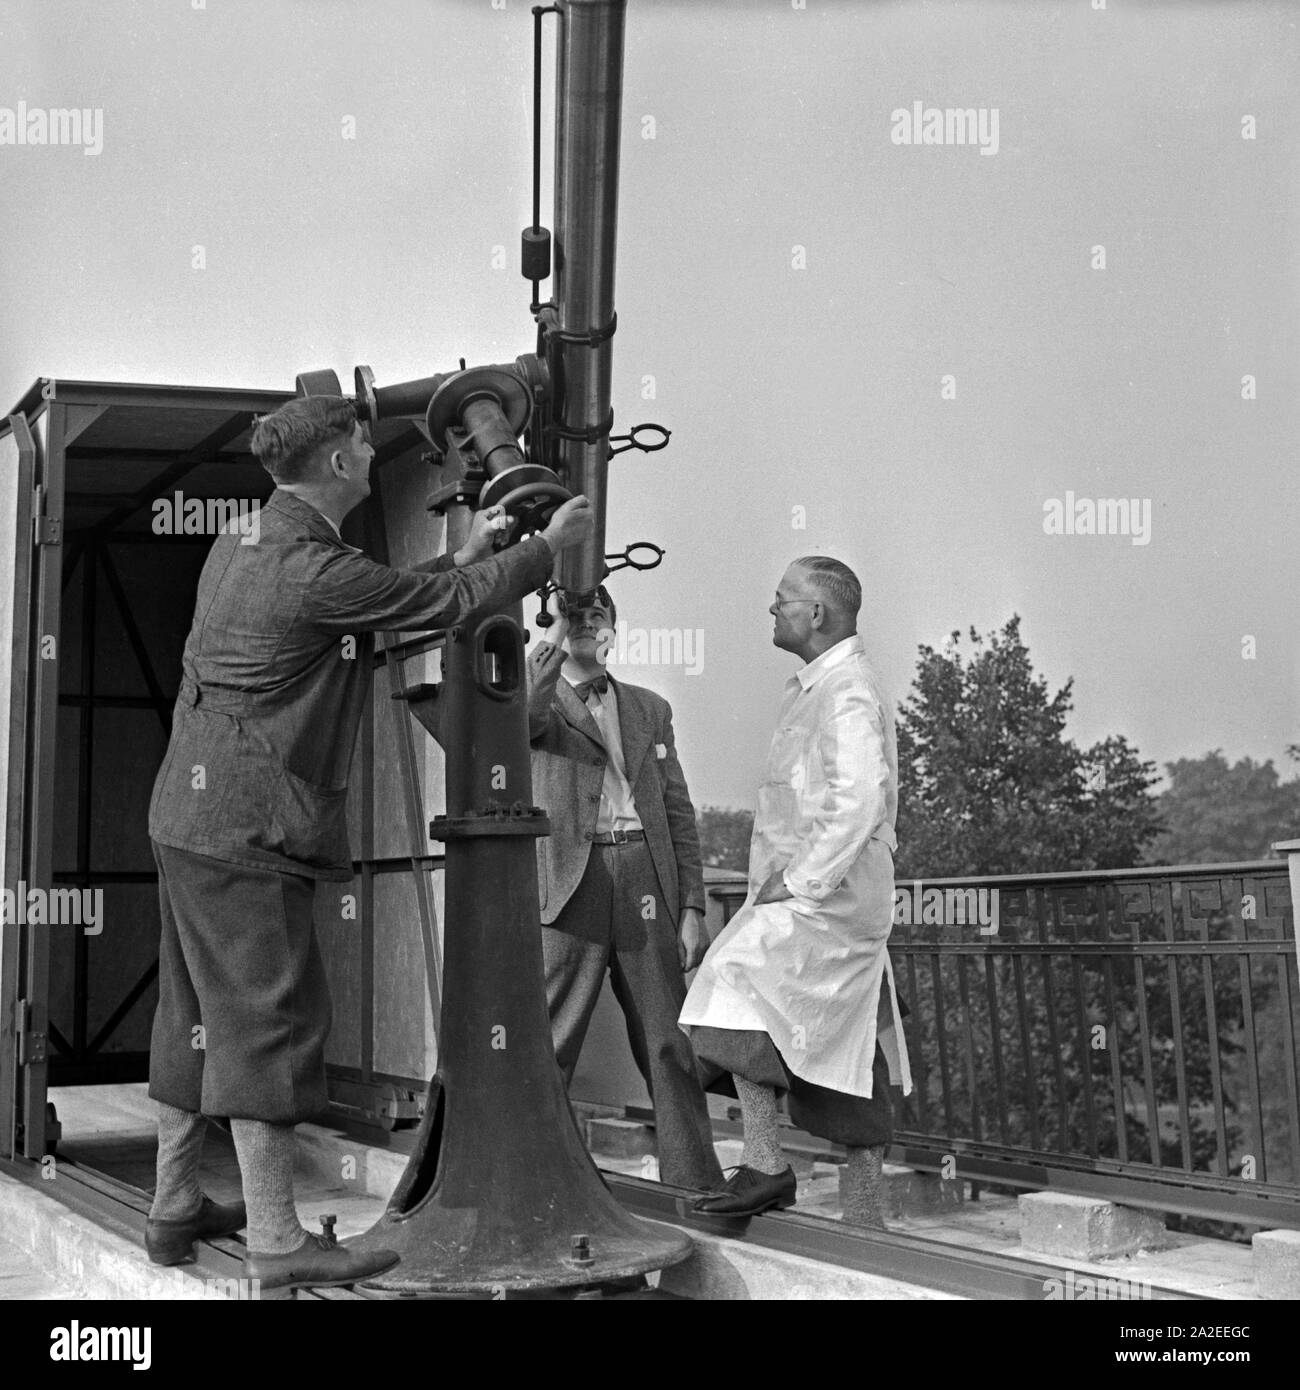 Mitarbeiter der Sternwarte Berlin Treptow justieren das Kleinteleskop auf  dem Dach, Deutschland 1930er Jahre. Mitarbeiter der Berlin Treptow  Sternwarte einstellen ein kleineres Teleskop auf dem Dach, Deutschland 1930  Stockfotografie - Alamy